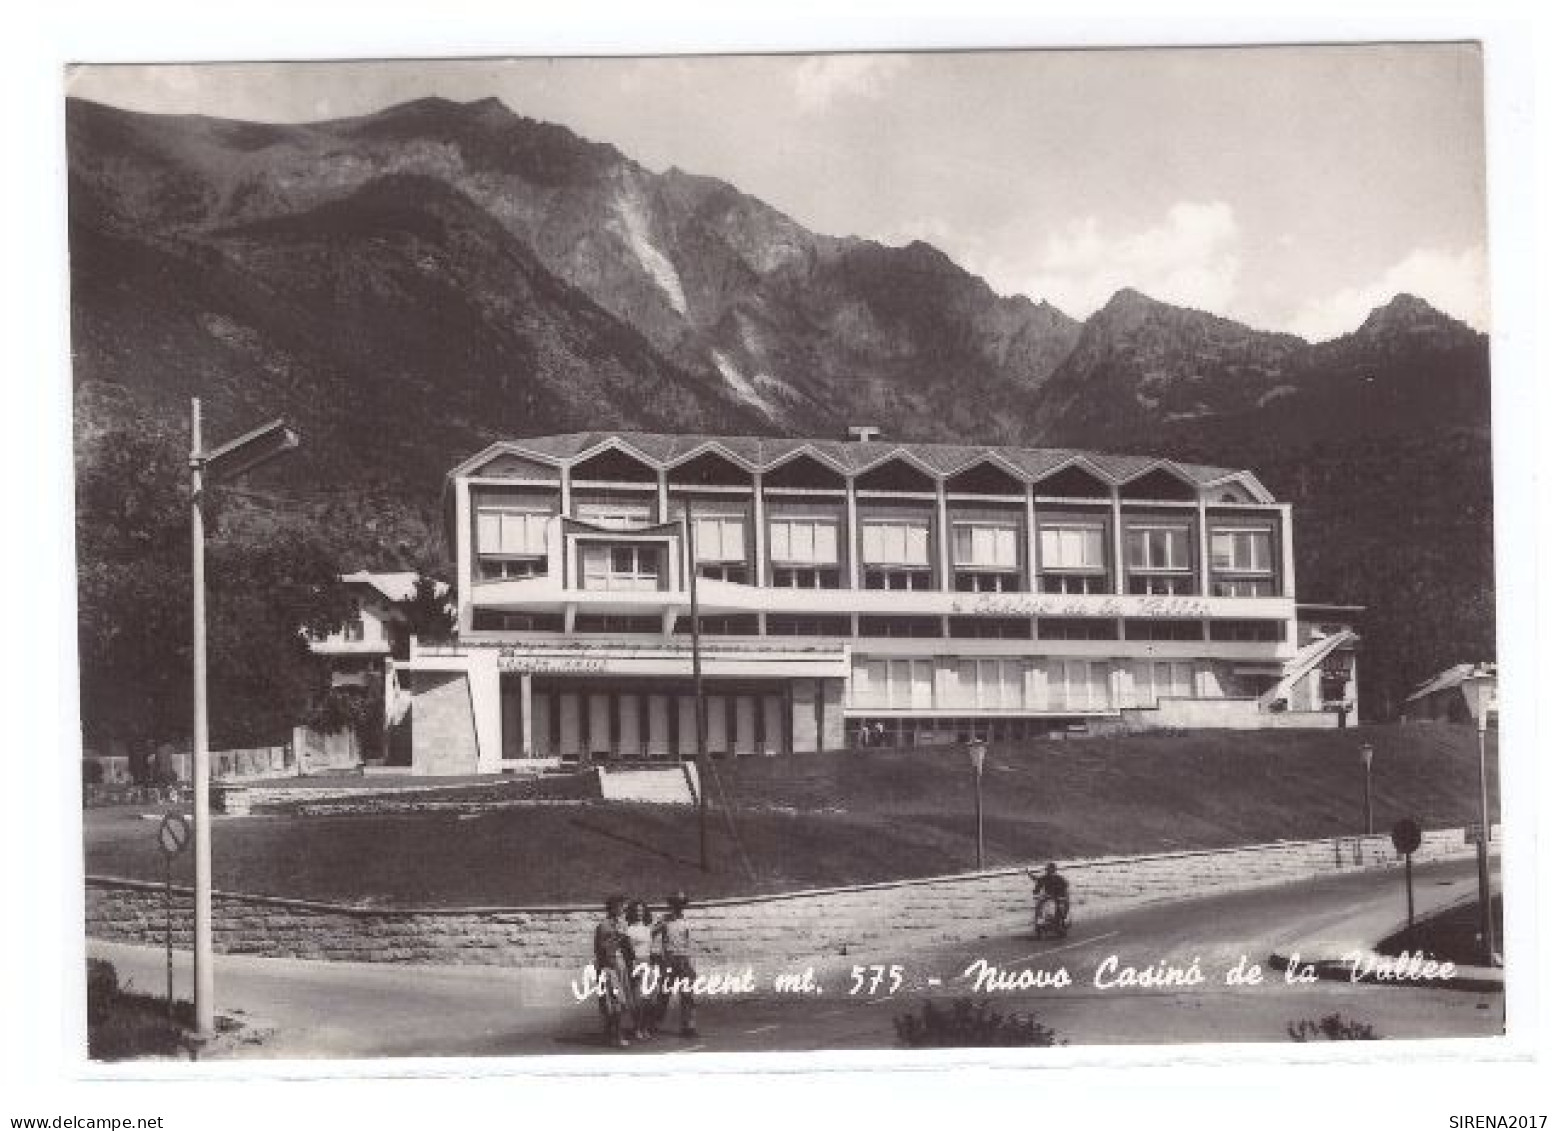 SAINT VINCENT - NUOVO CASINO' DE LA VALLEE - AOSTA - VIAGGIATA - Aosta